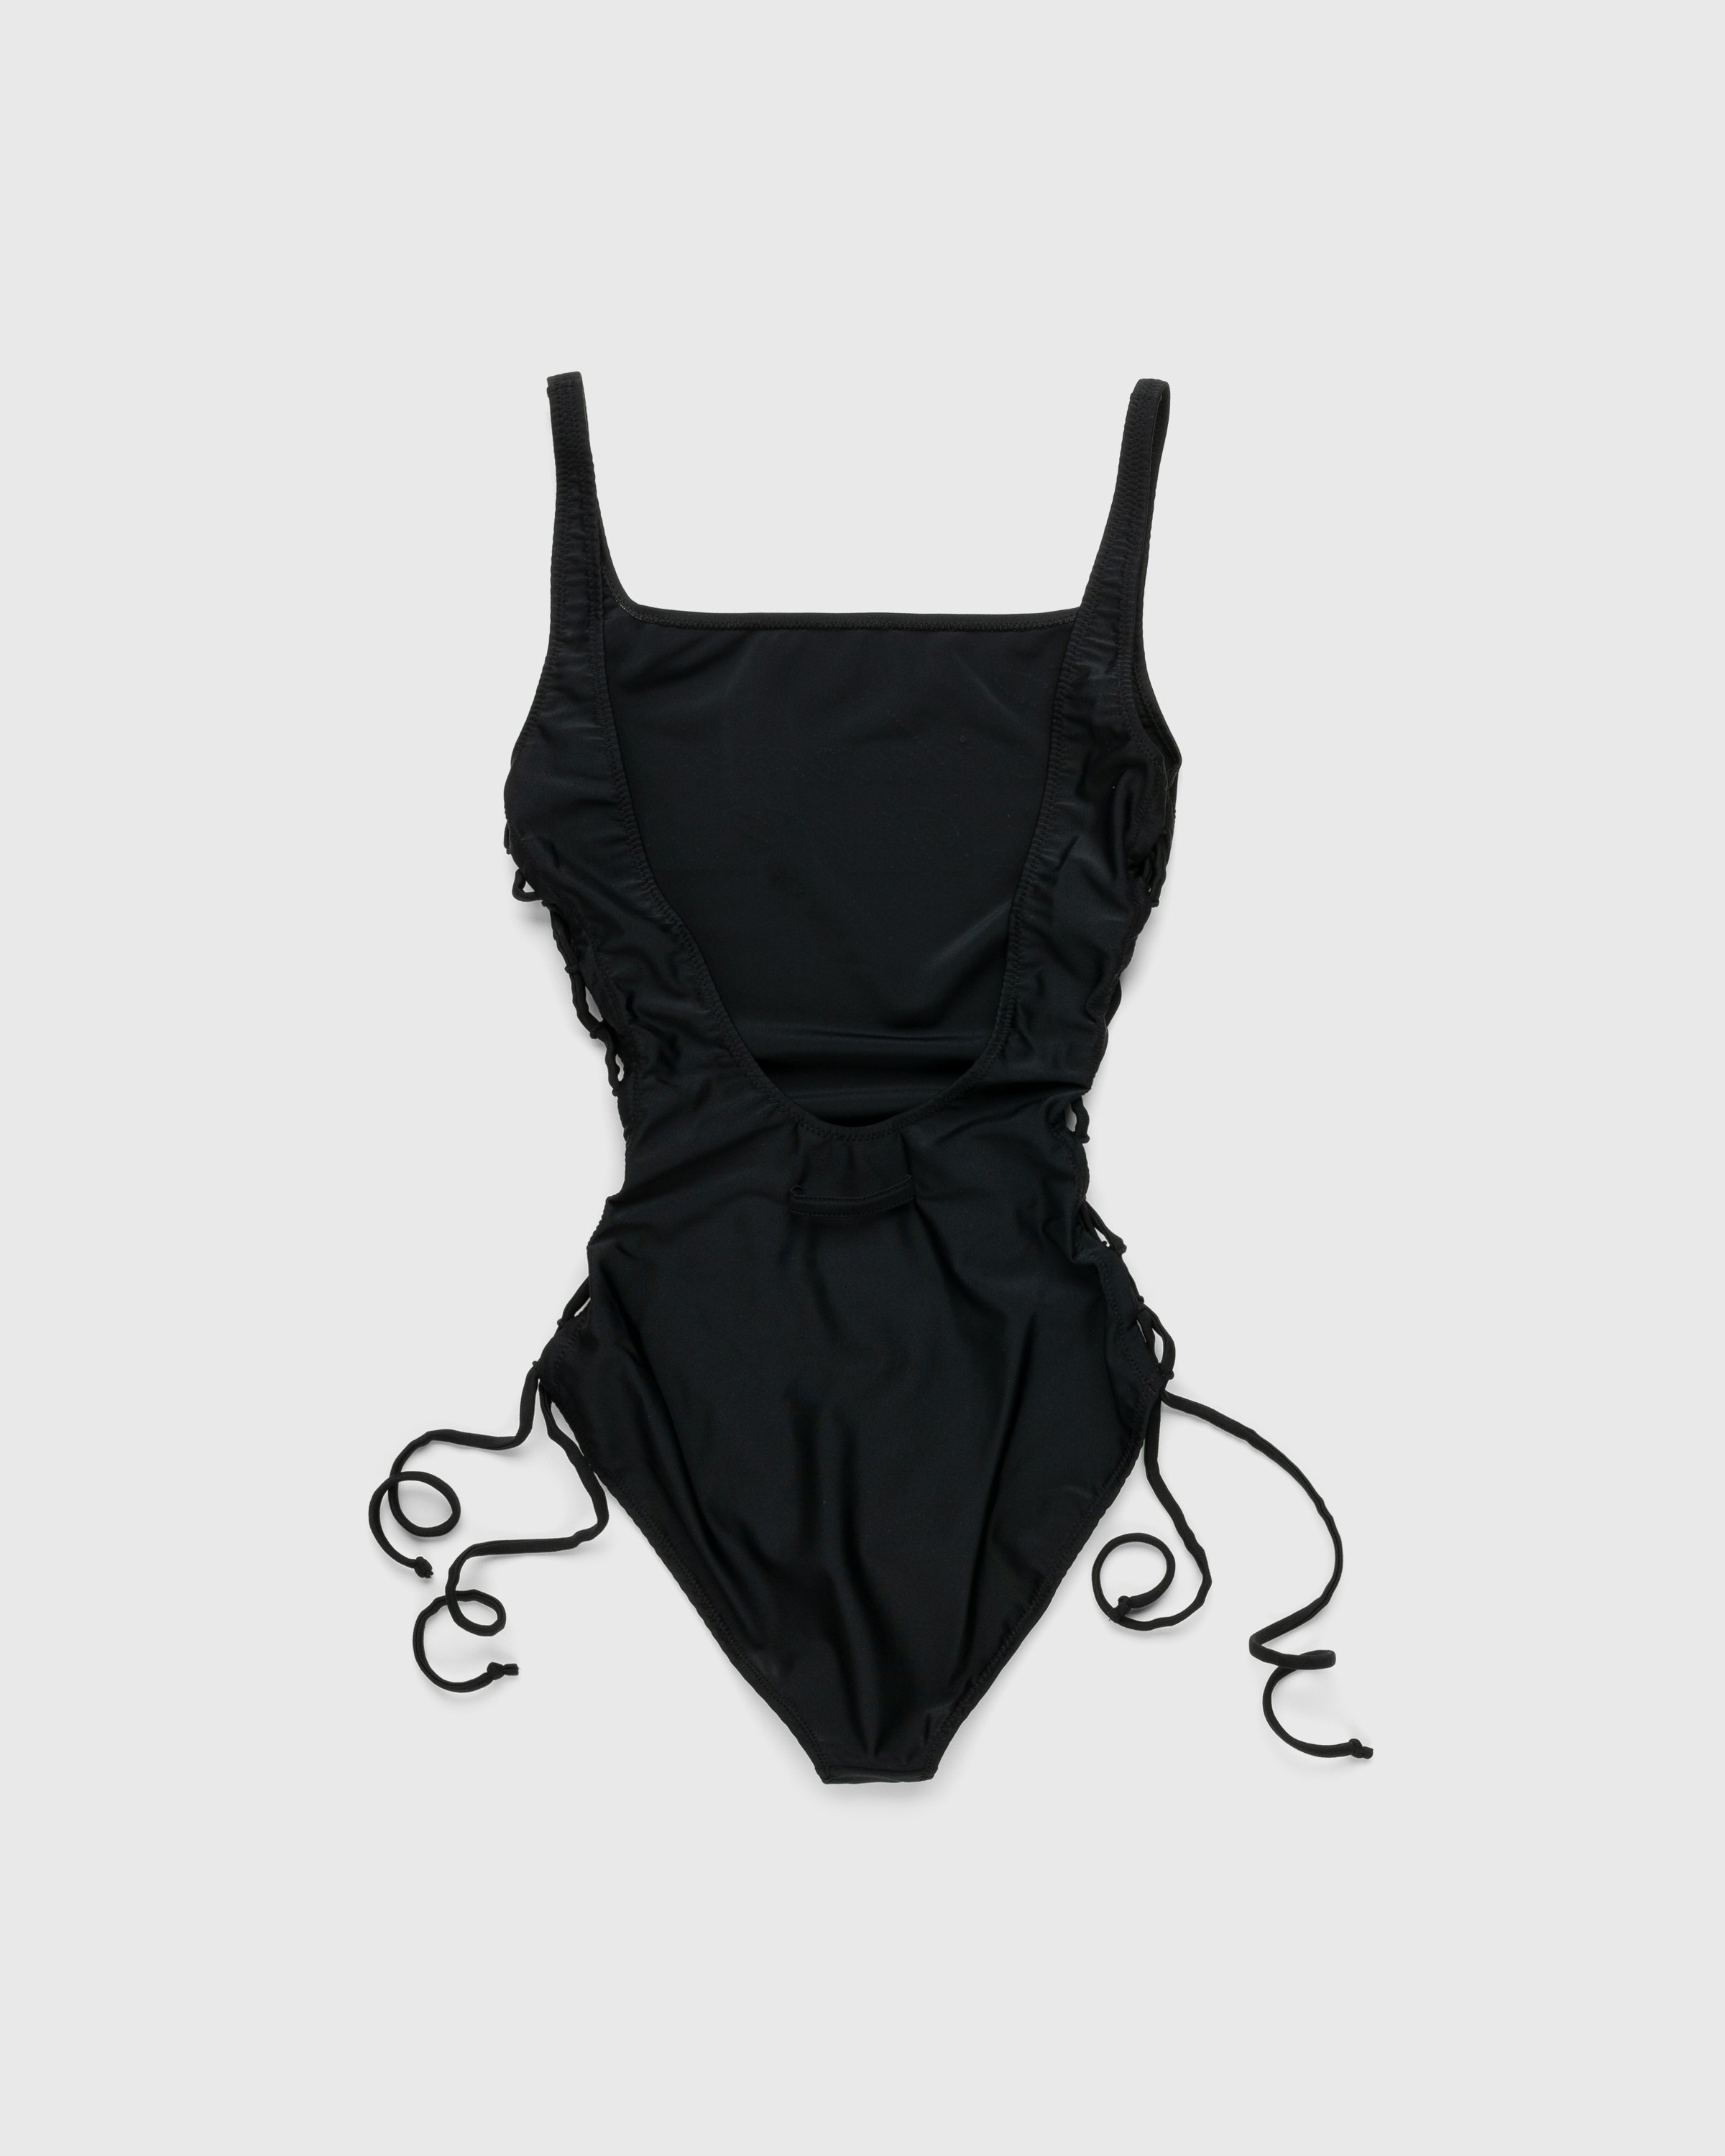 Jean Paul Gaultier - Évidemment Swimsuit Black - Clothing - Black - Image 2